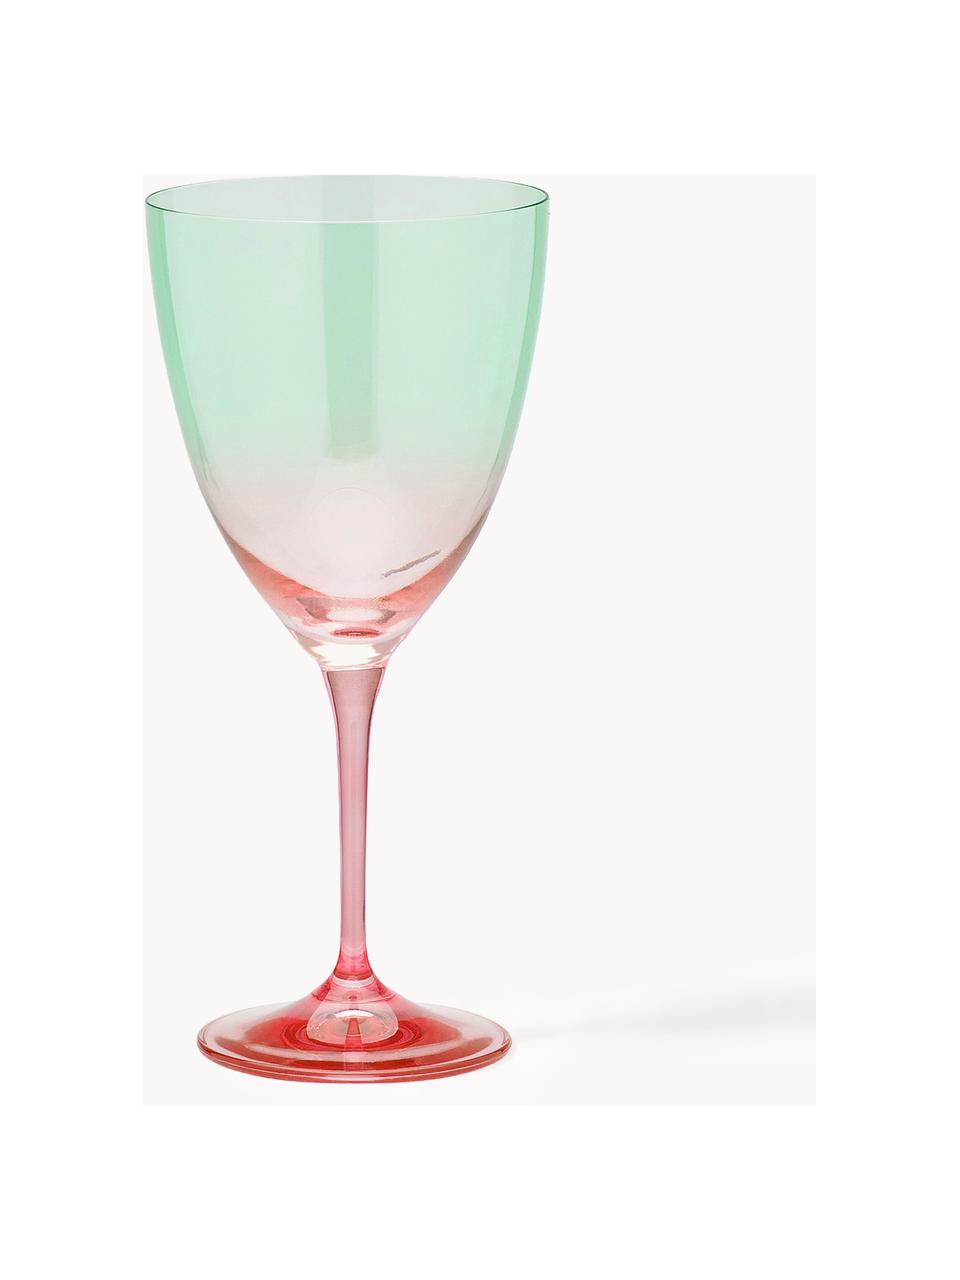 Bicchieri da vino Ombre Flash 2 pz, Vetro, Verde turchese, corallo, Ø 10 x Alt. 12 cm, 400 ml